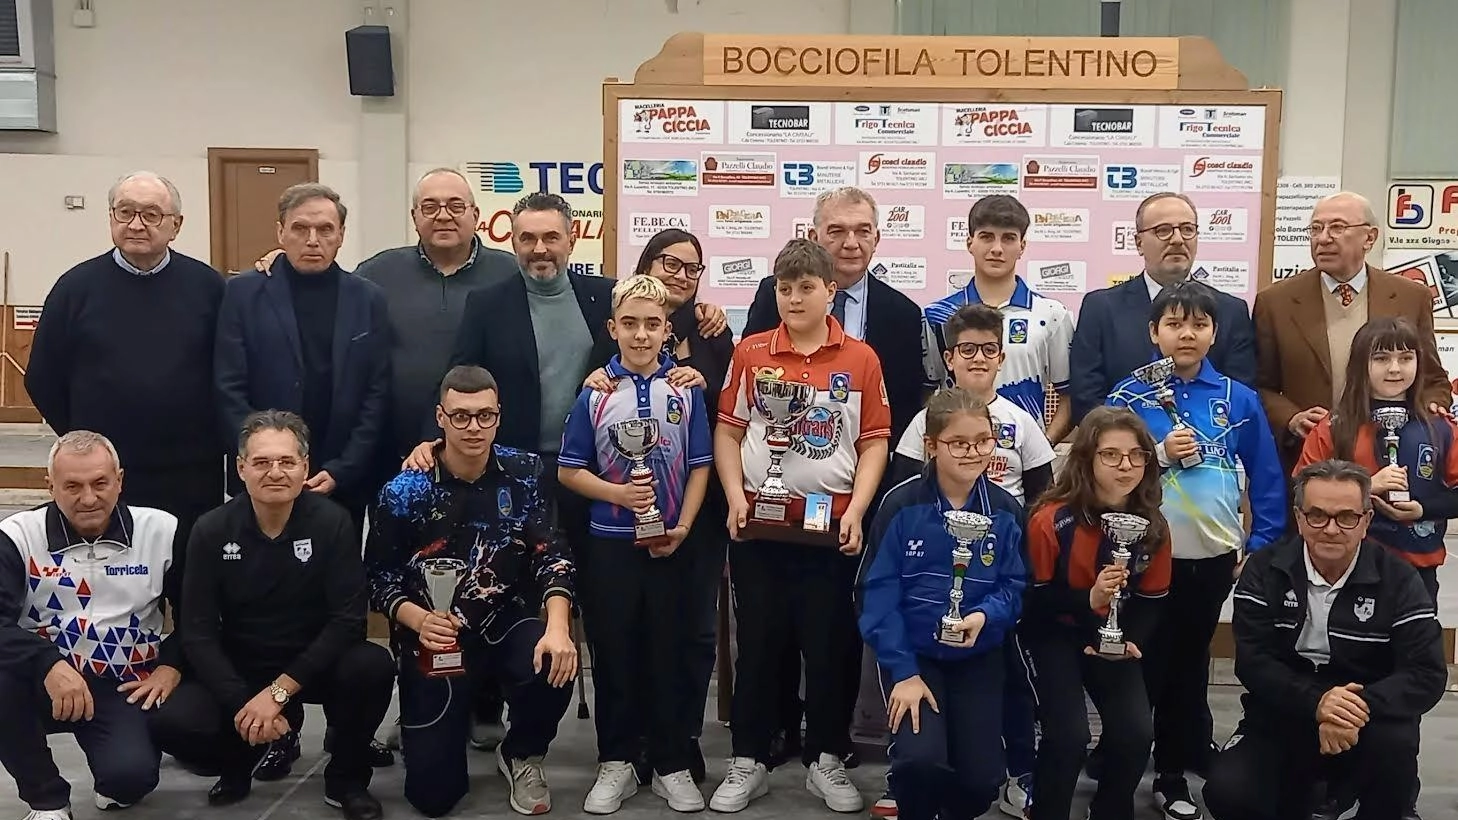 Un successo la sfida di Tolentino per il trofeo giovanile di bocce. Medaglia d’argento per Principi